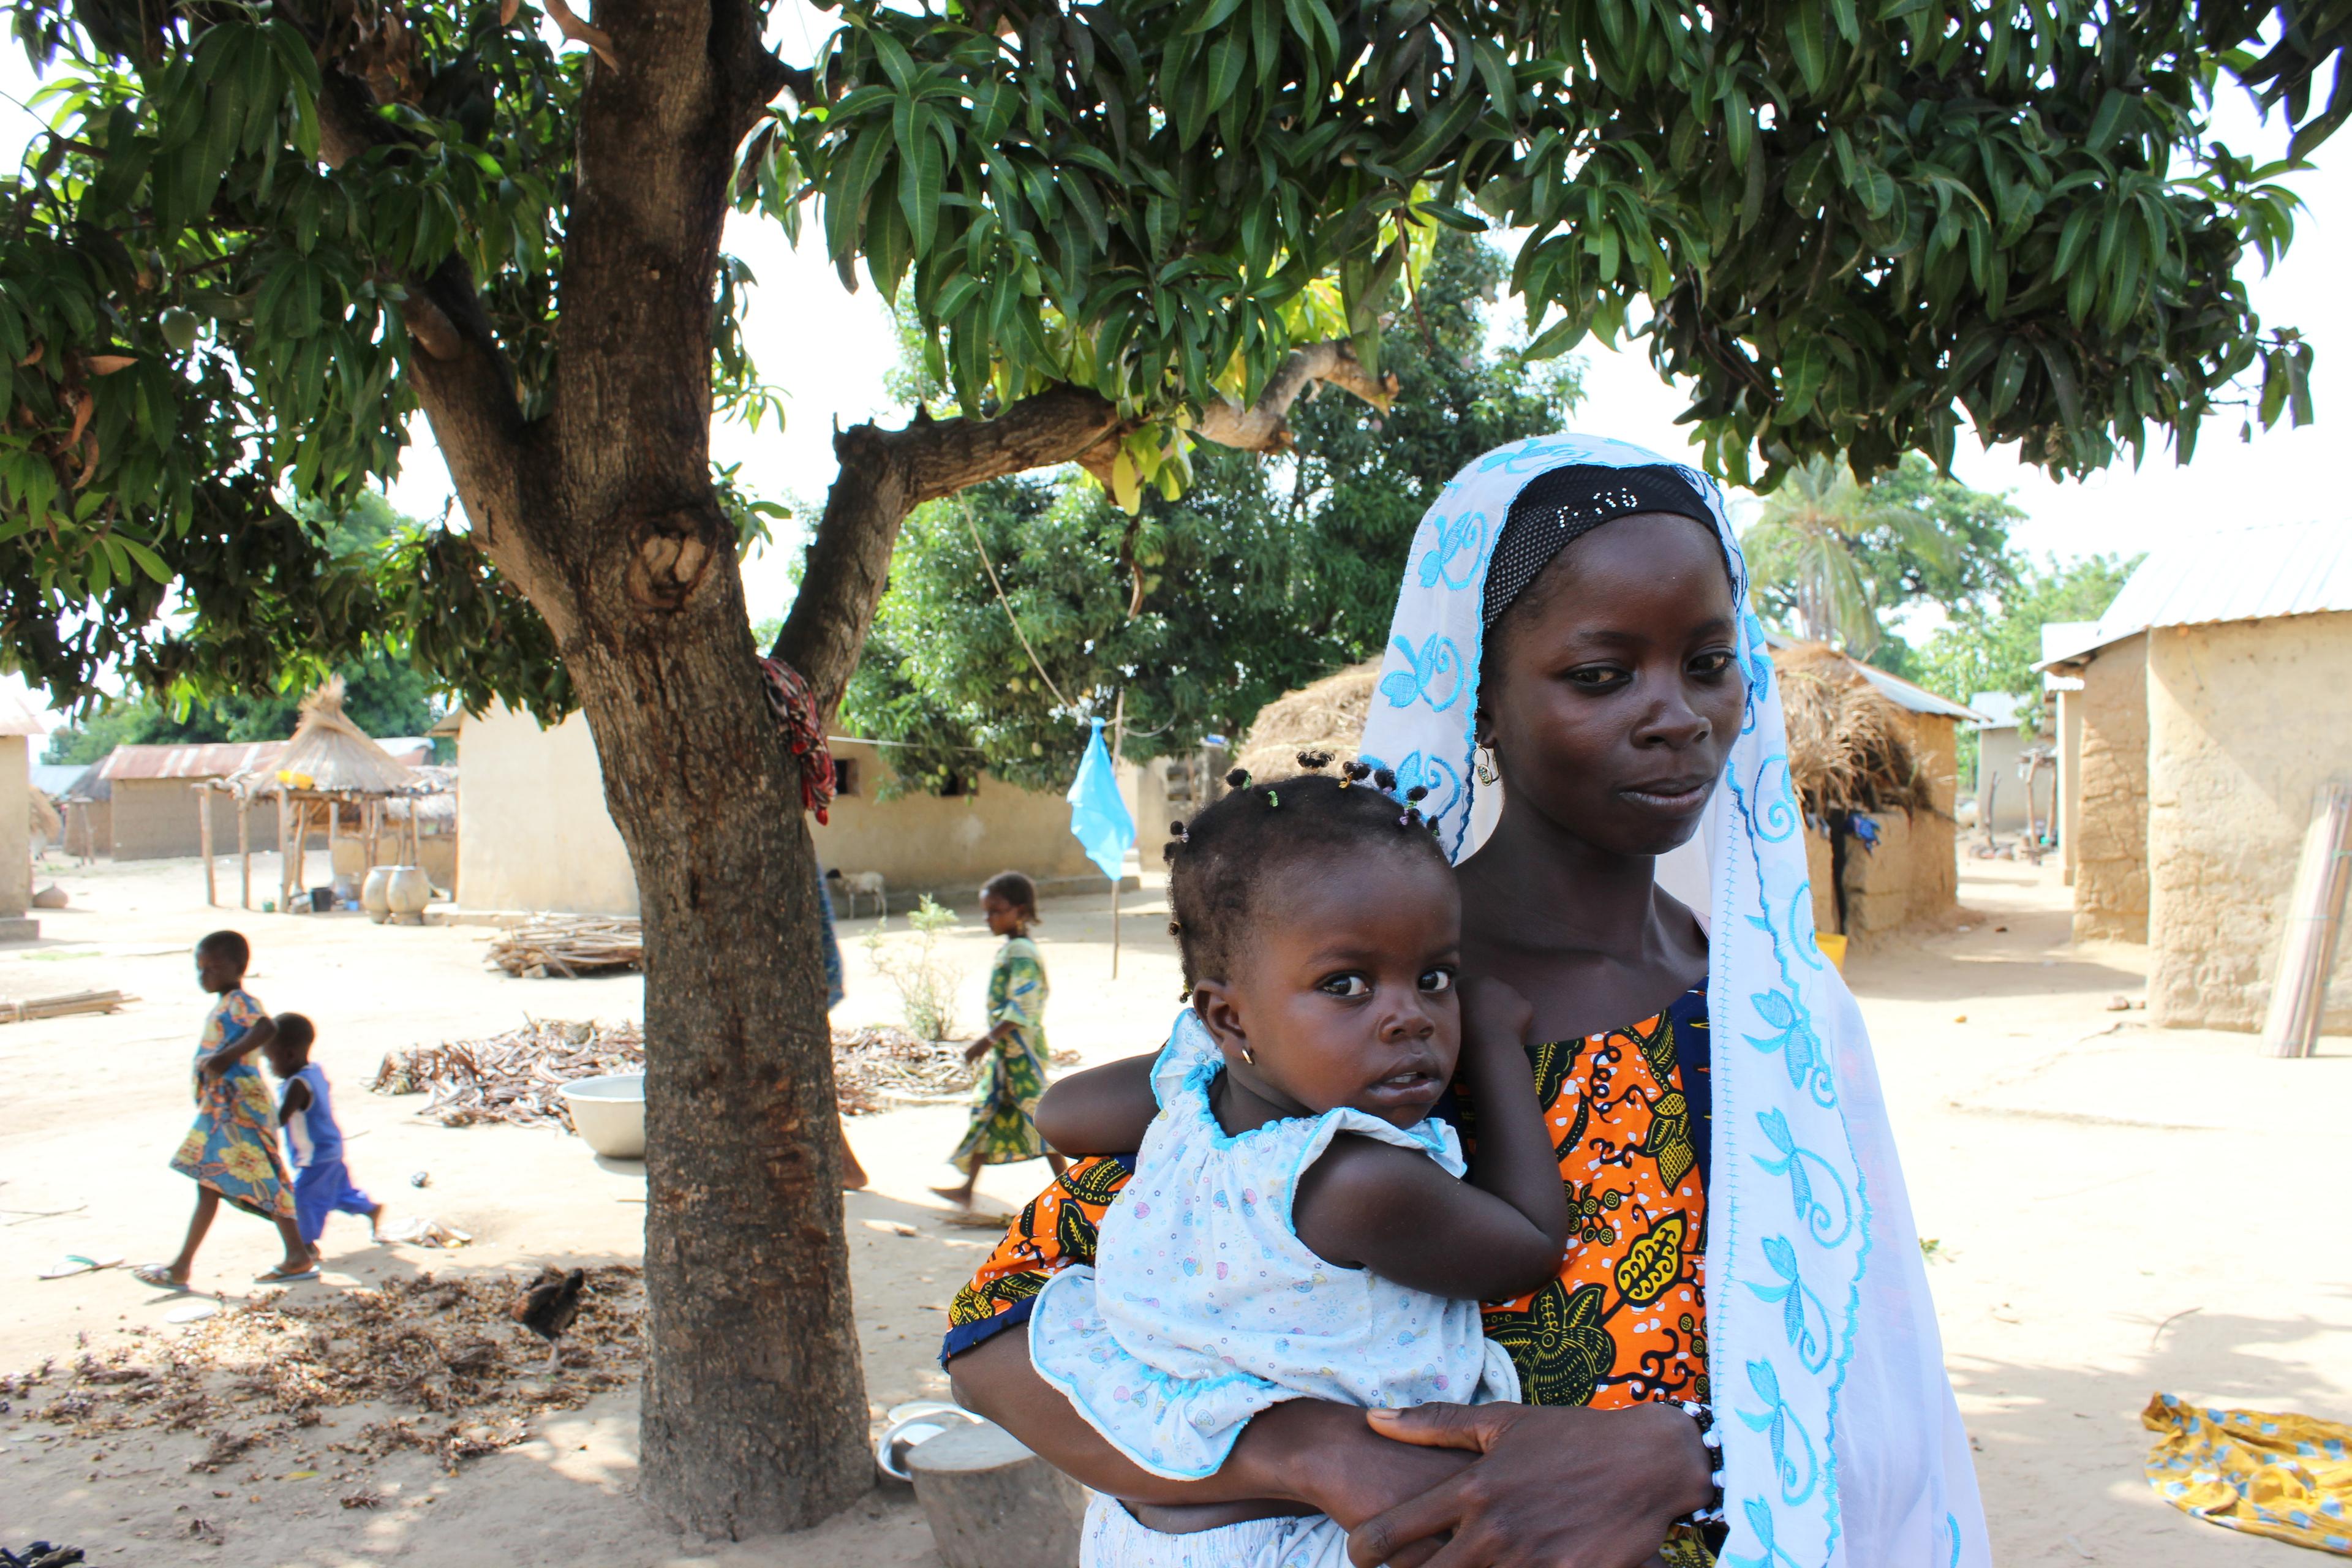 Una madre tiene in braccio un neonato. Si trovano all'ombra sotto un albero in un villaggio. Sullo sfondo ci sono altri bambini.